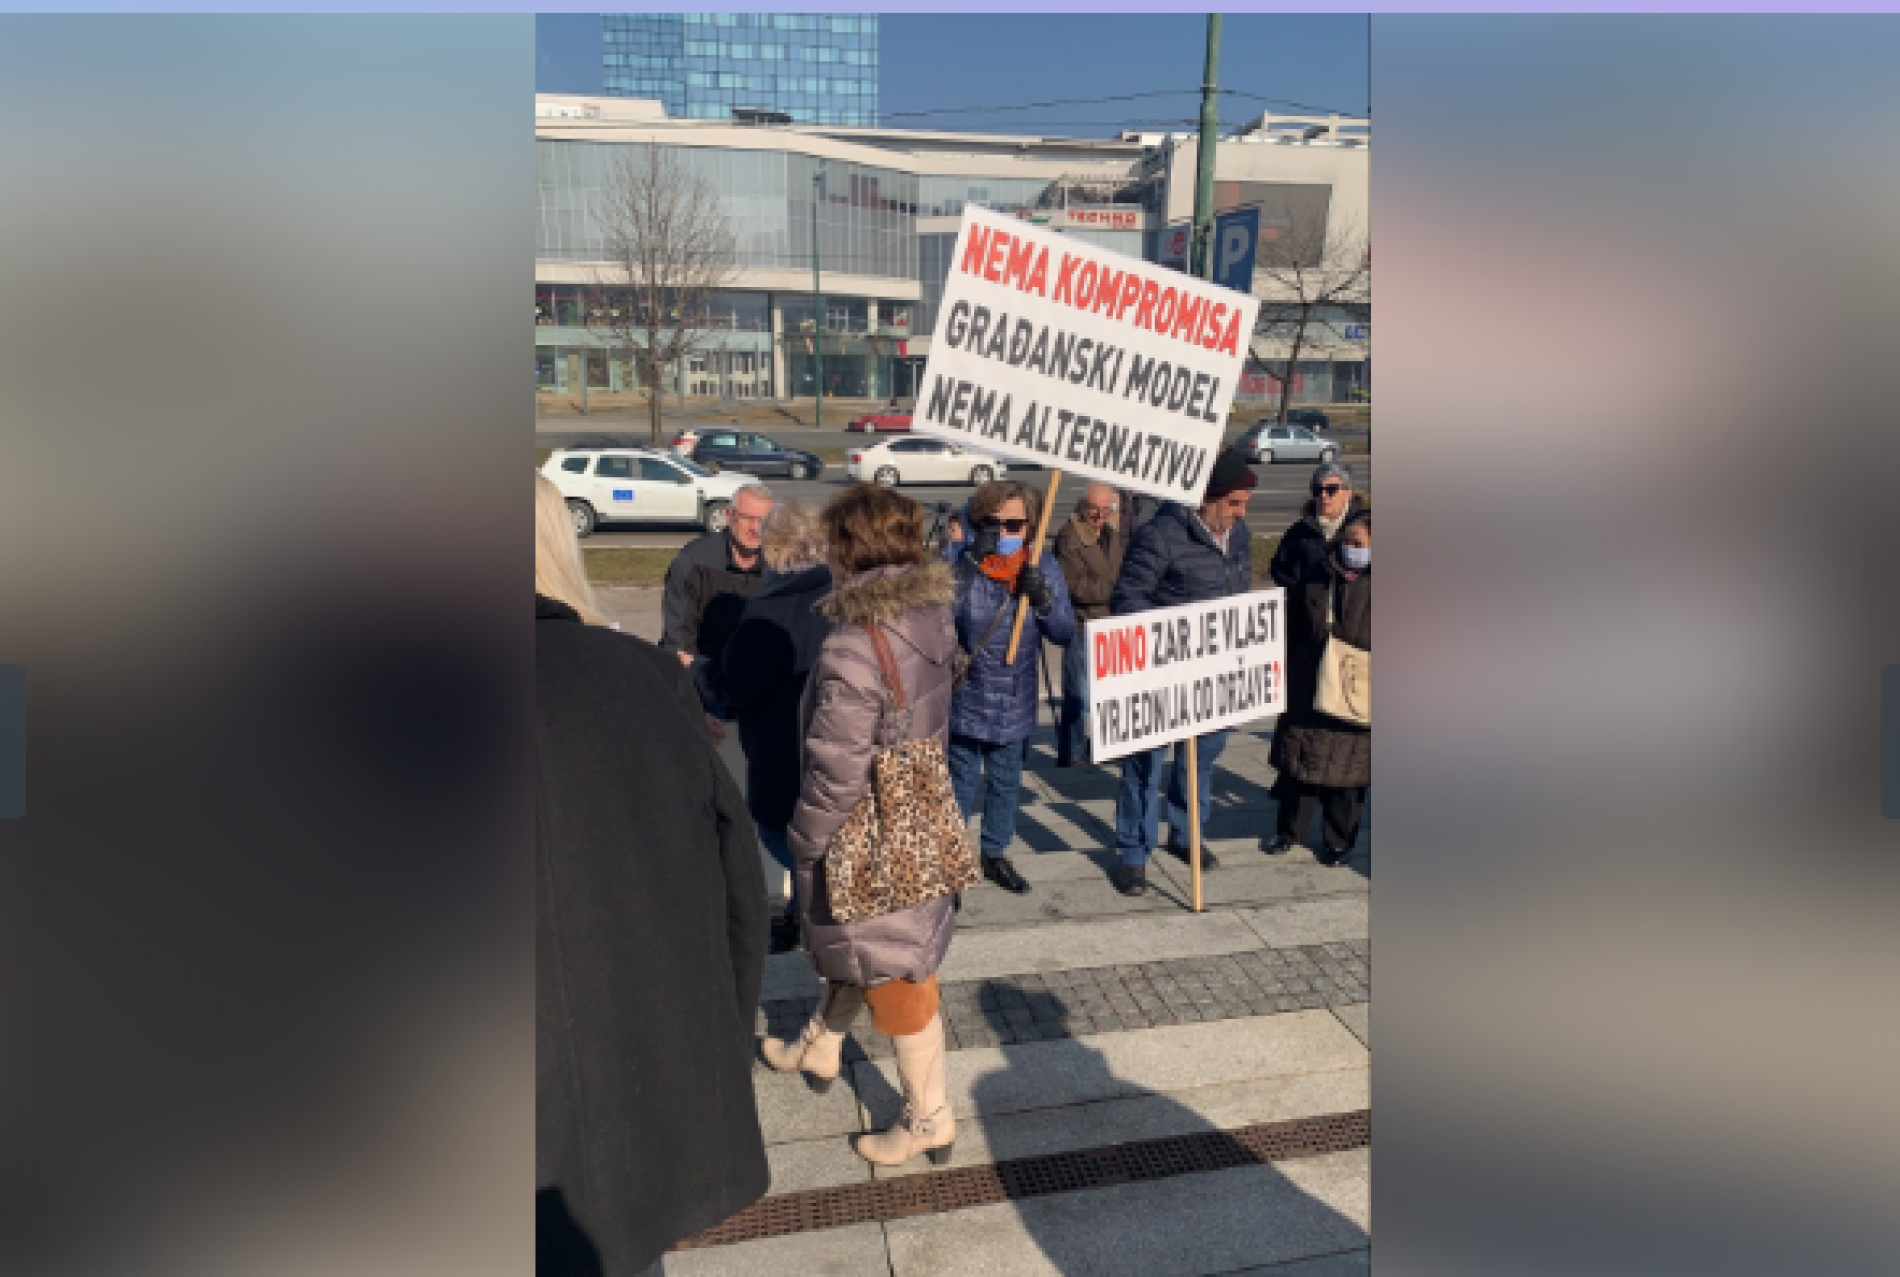 Protesti u Sarajevu: “Dino, zar je vlast vrijednija od države”. “Angelina Eichhorst persona non grata”